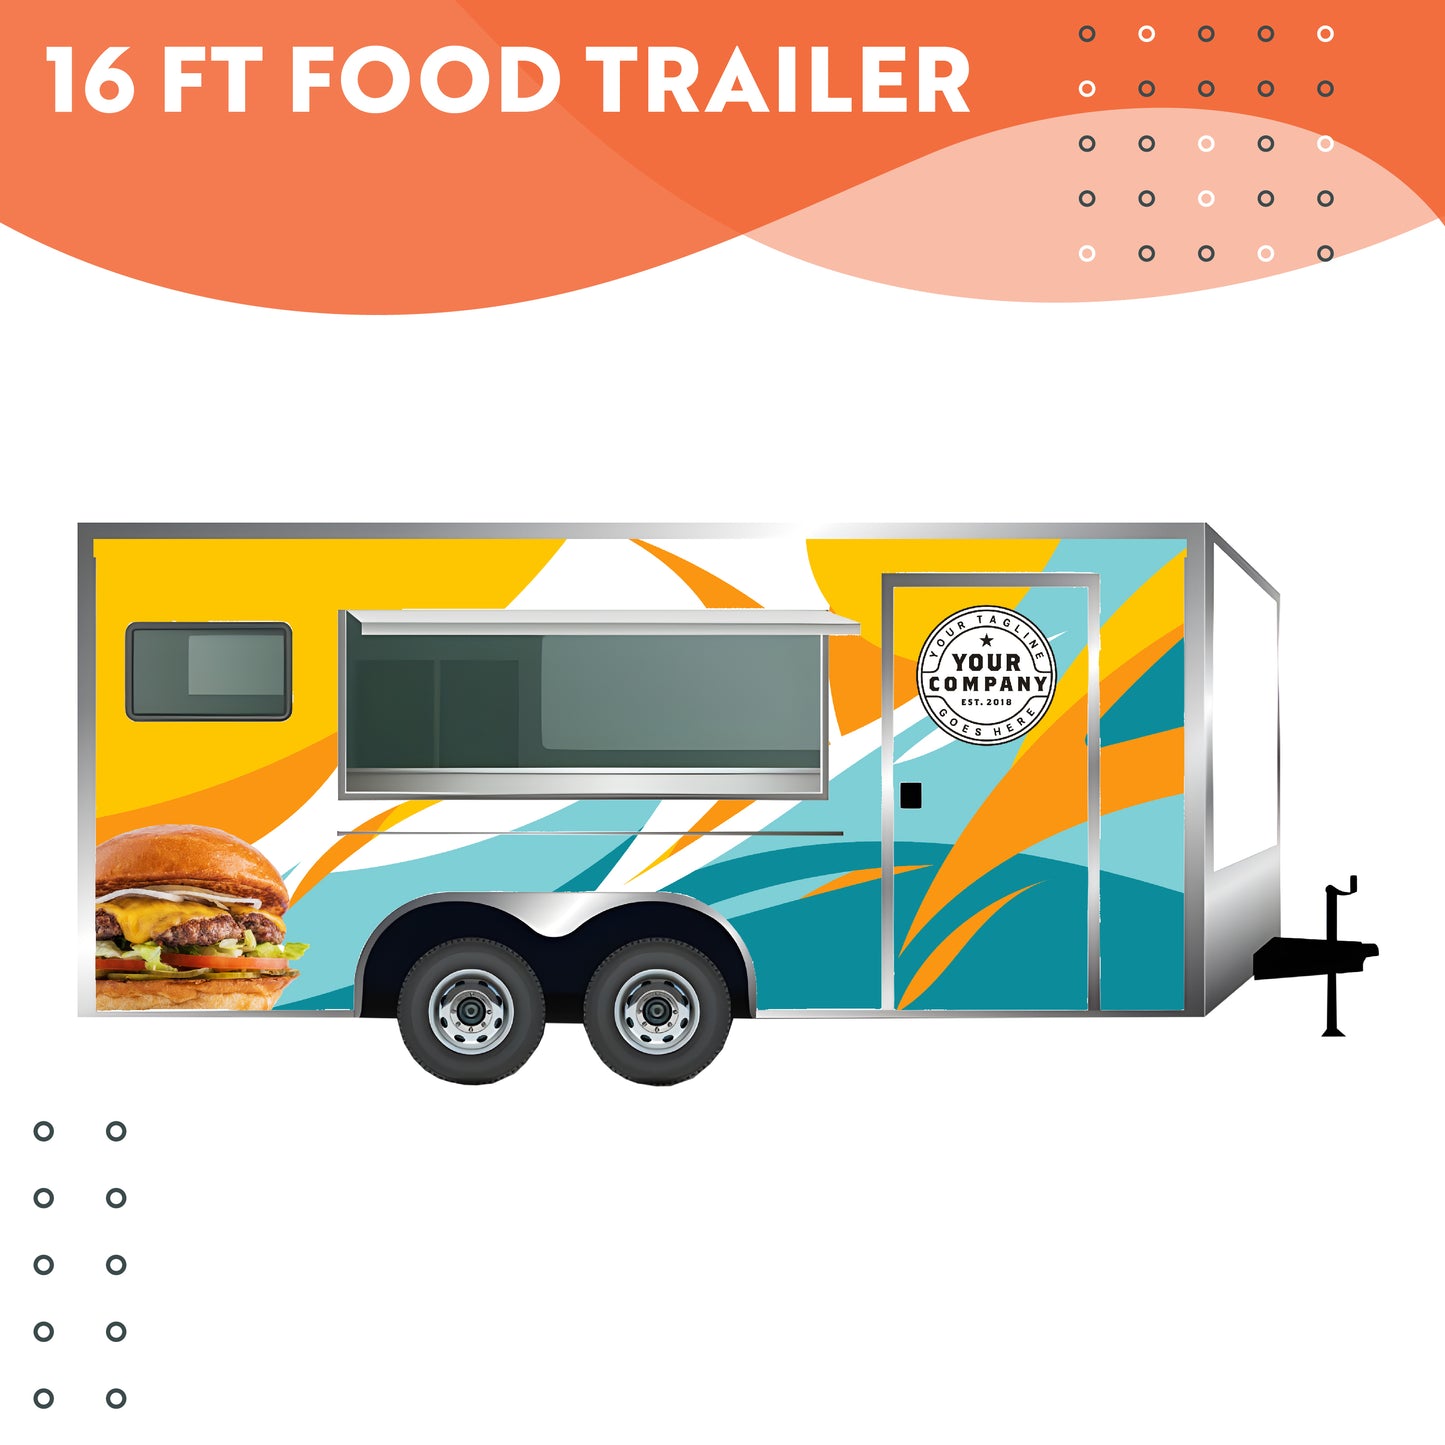 16 ft Food Trailer